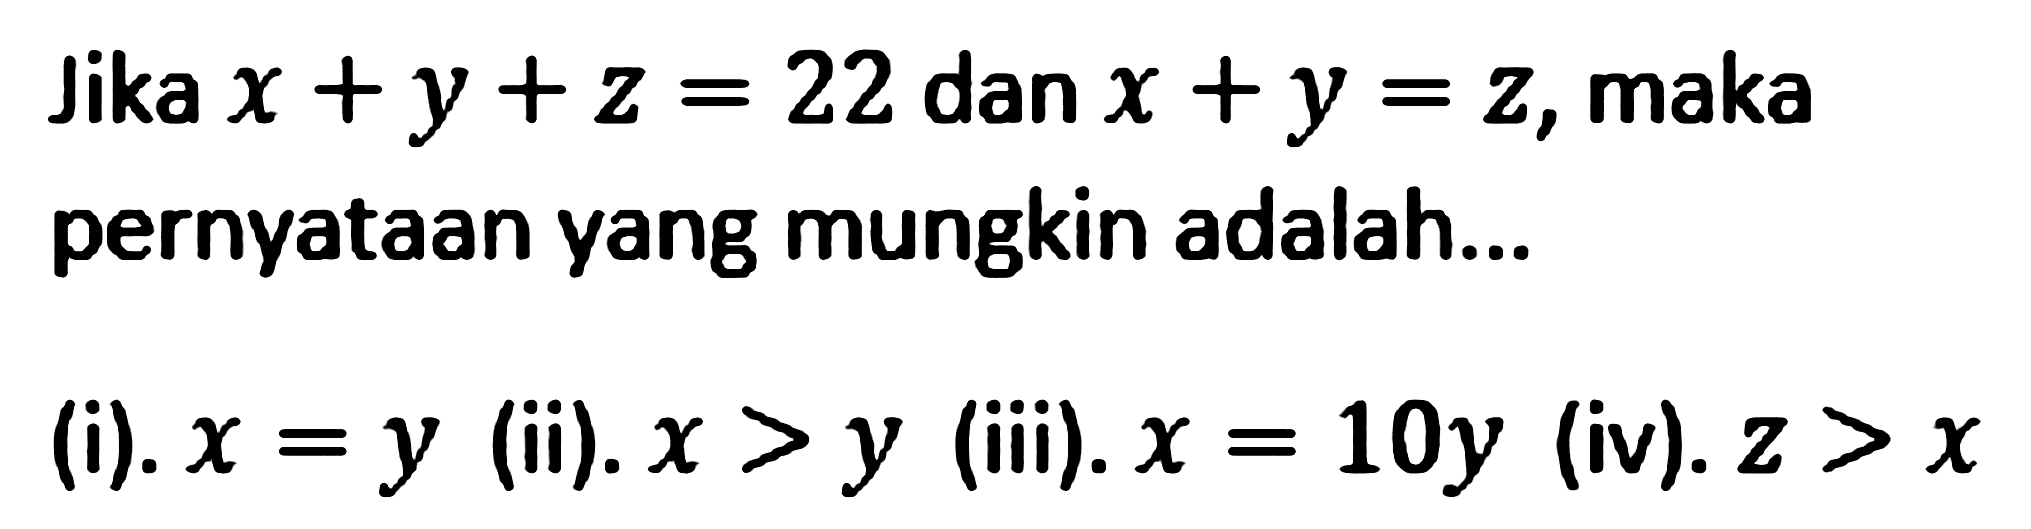 Jika x+y+z=14 dan x+y=z, maka pernyataan yang mungkin adalah... (i). x=y (ii). x>y (iii). x=10y (iv). z>x